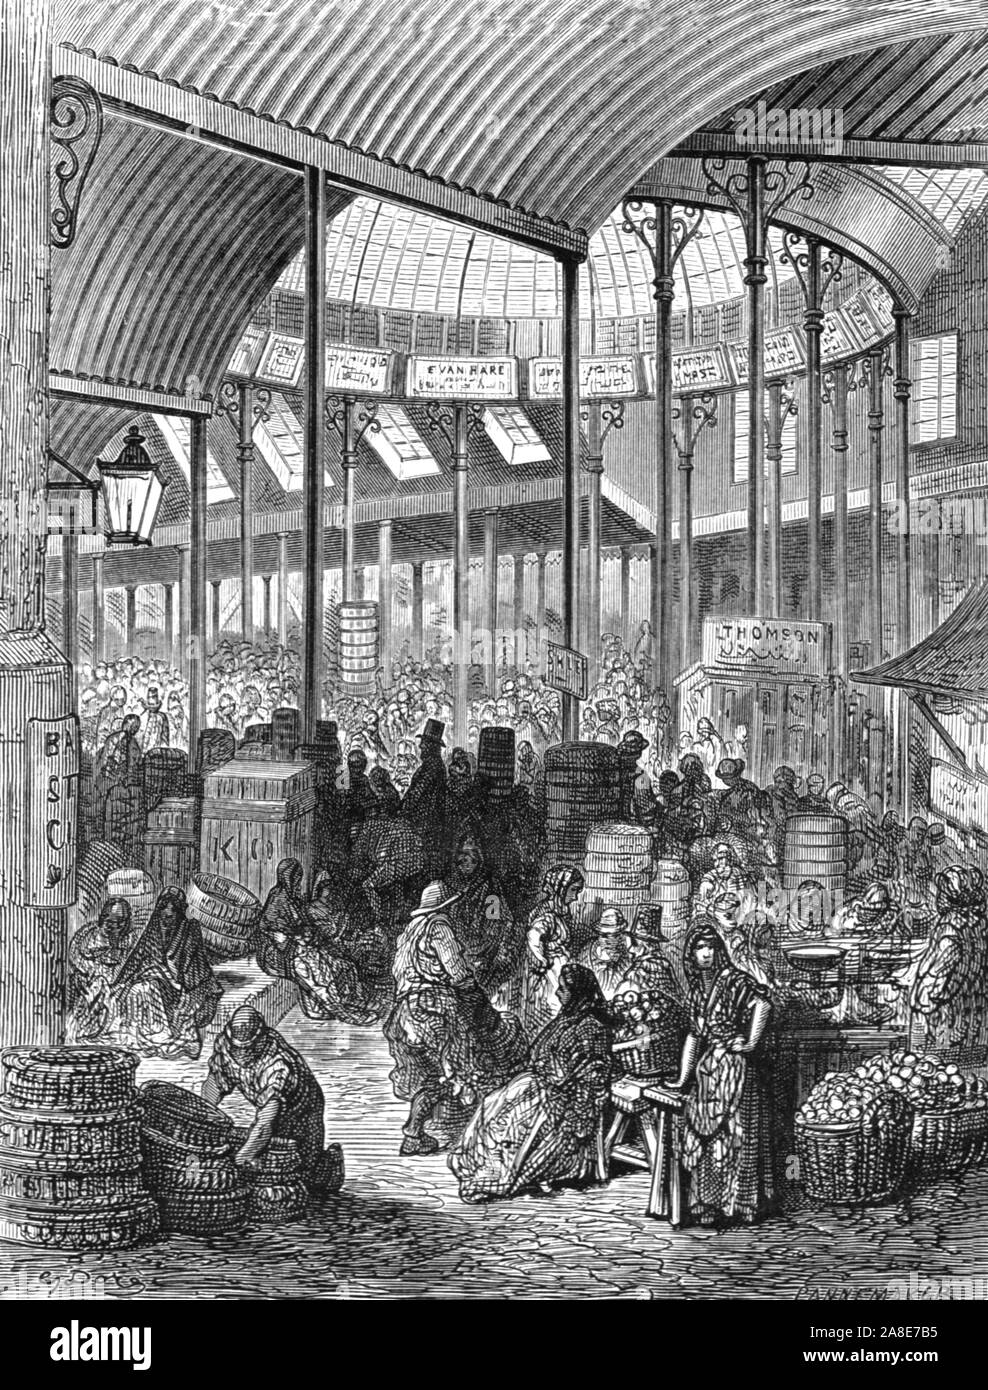 "Borough Market', 1872. Markt in Southwark von Henry stieg in 1851 konzipiert. "LONDON. Eine Pilgerreise" von Gustave Dore und Blanchard Jerrold. [Grant und Co., 72-78, Turnmill Street, E.C., 1872]. Stockfoto